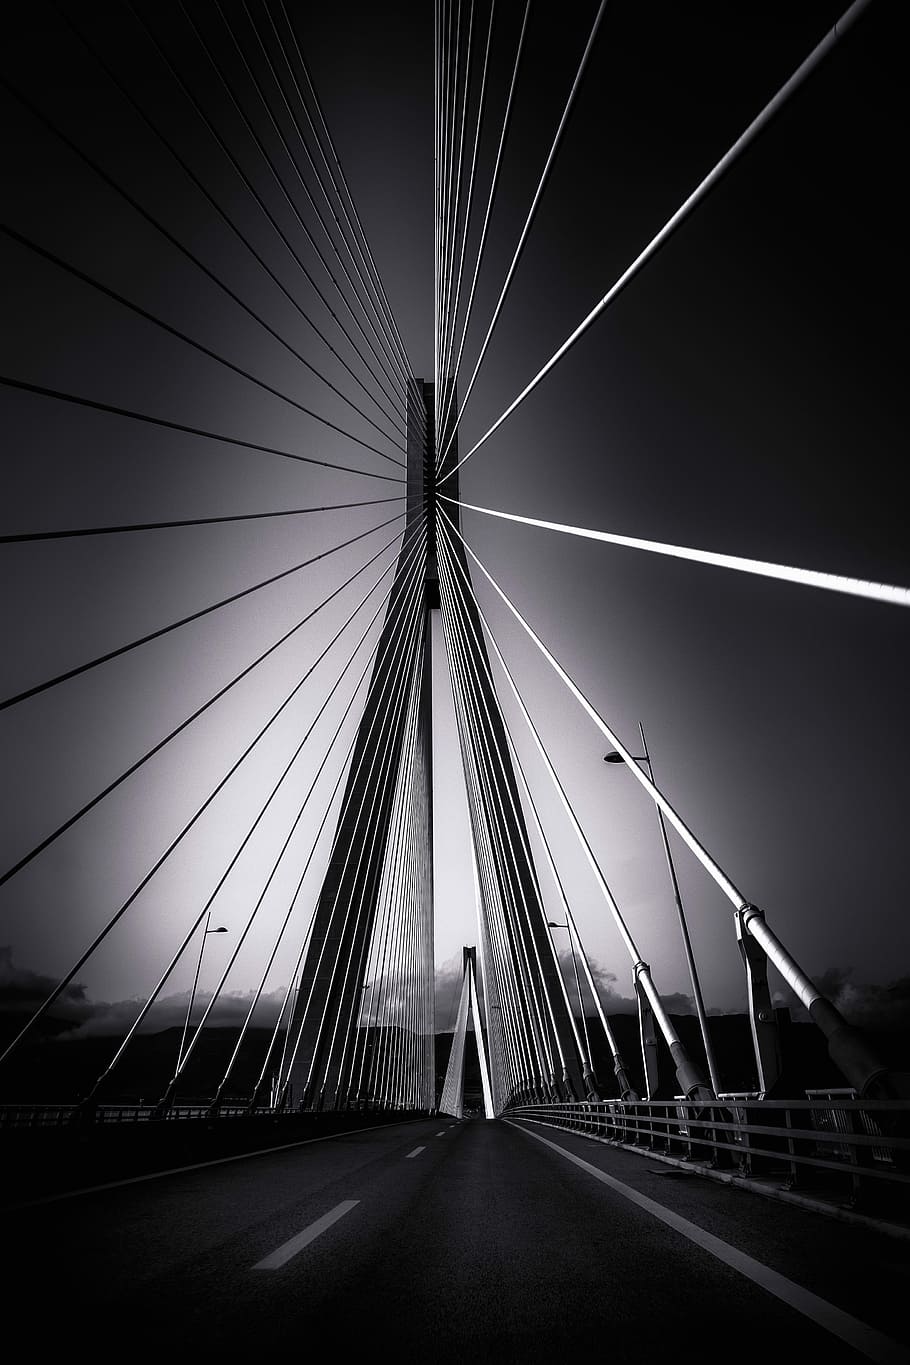 グレースケール写真, 橋, リオ–アンティリオ橋, 斜張橋, 建築, ギリシャ, 黒と白, 輸送, 接続, 橋-人工構造